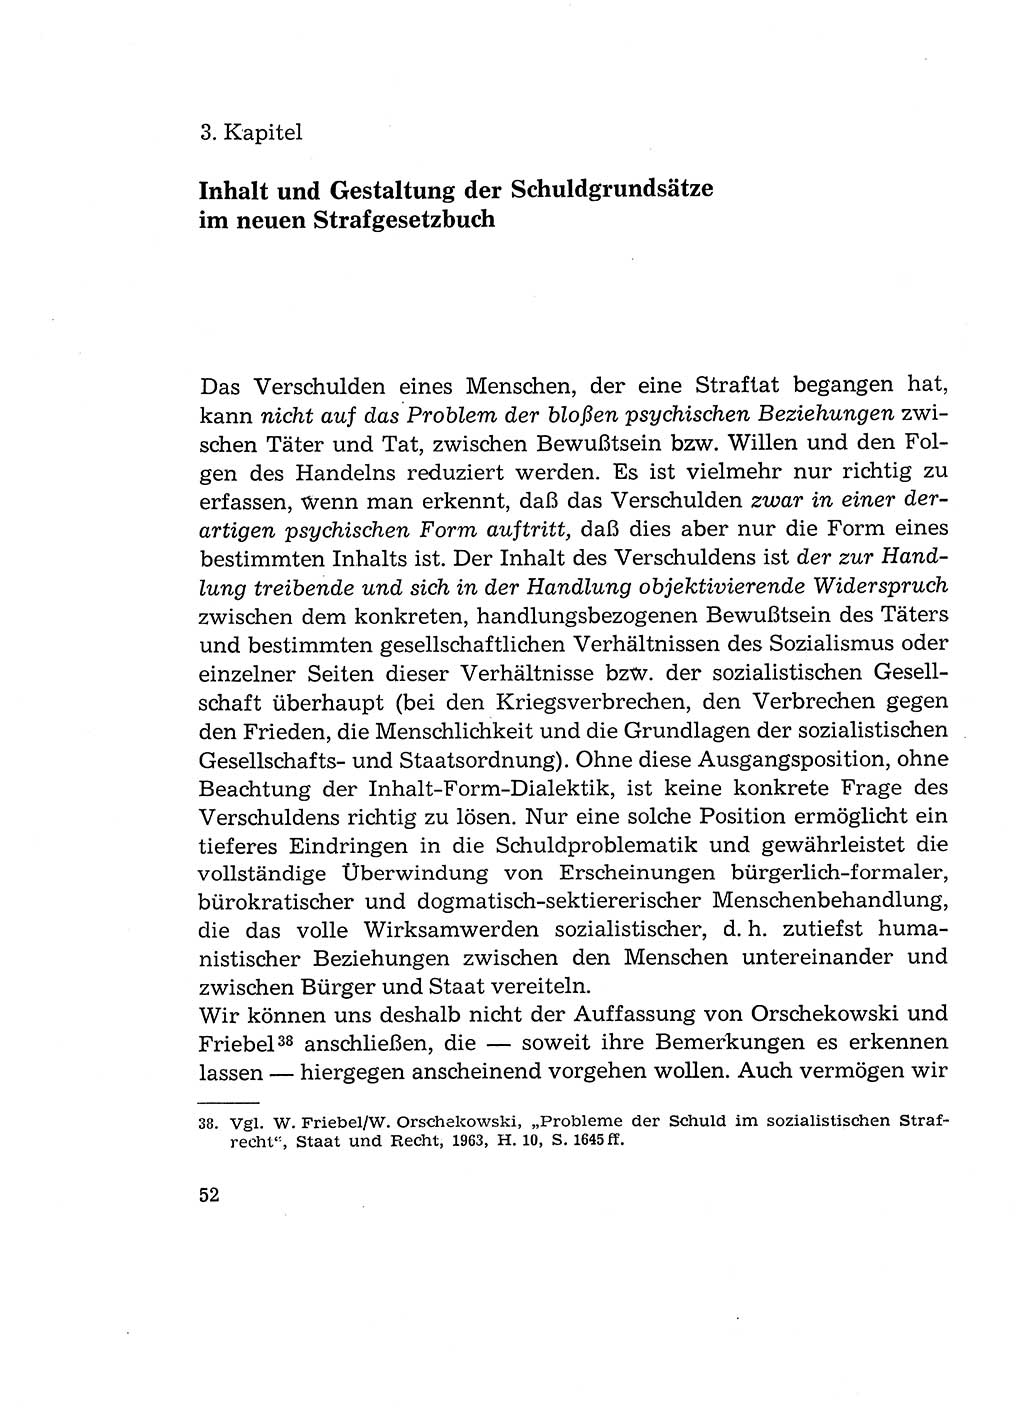 Verantwortung und Schuld im neuen Strafgesetzbuch (StGB) [Deutsche Demokratische Republik (DDR)] 1964, Seite 52 (Verantw. Sch. StGB DDR 1964, S. 52)